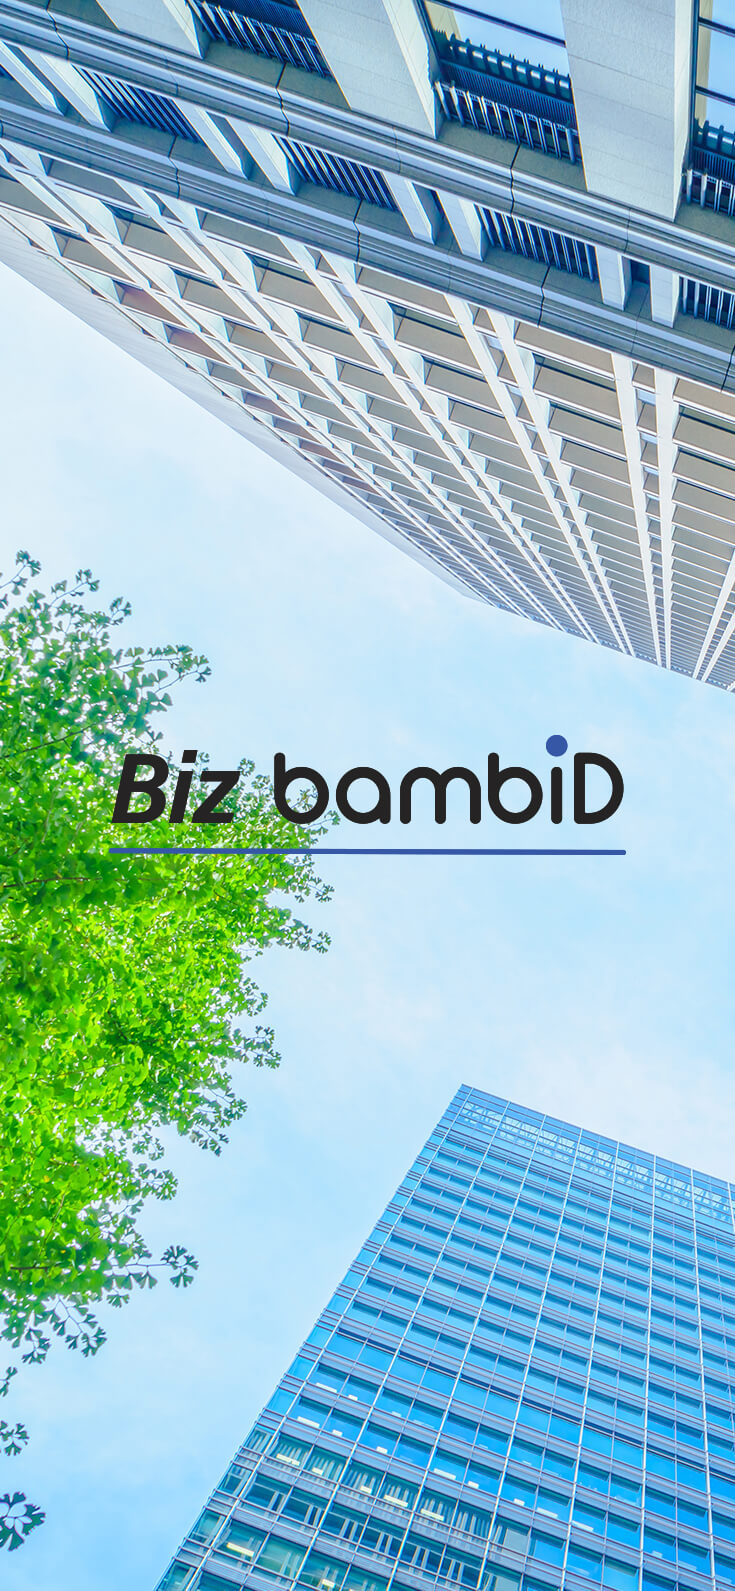 ビジネス支援　位置情報管理　IoTソリューション　Biz bambiD